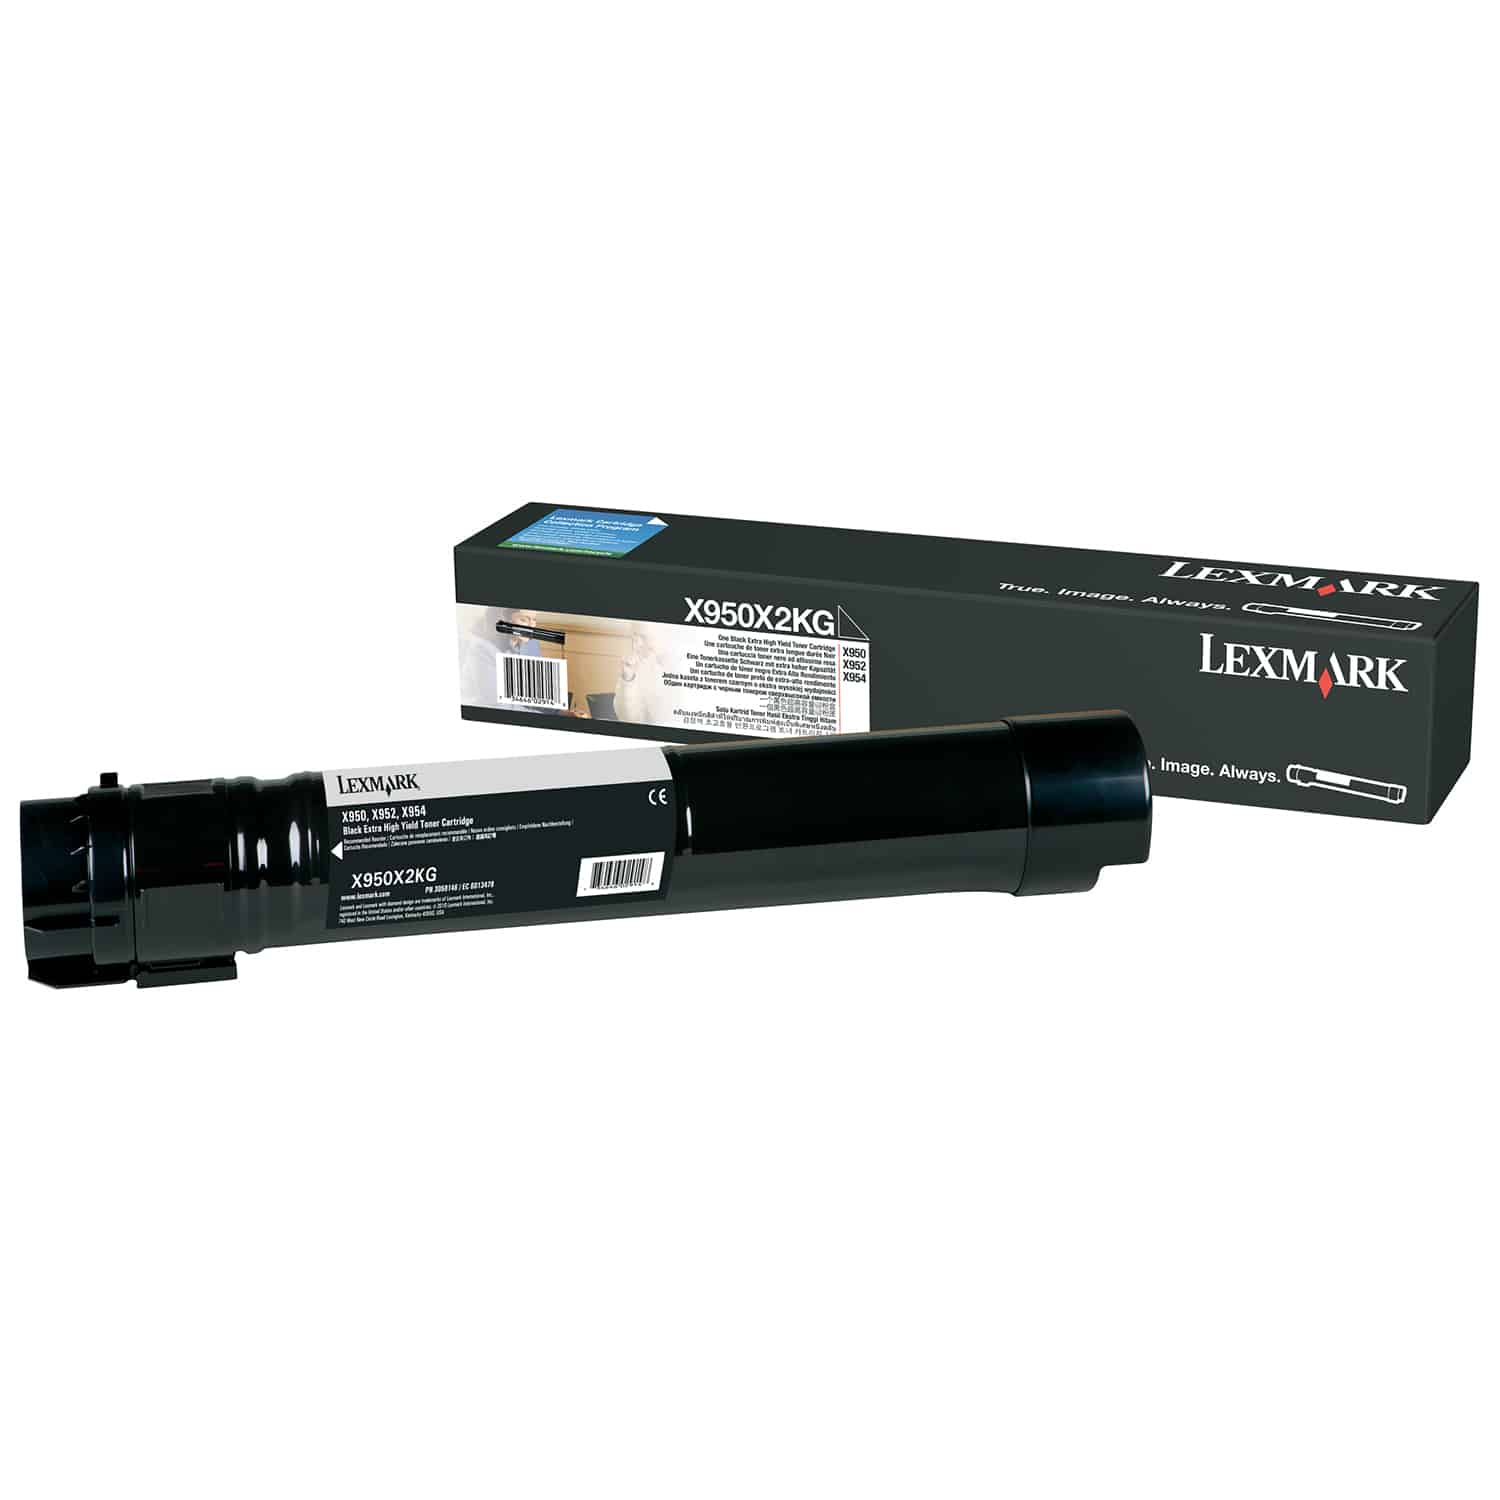 Cartouche de toner noire Lexmark X950X2KG d'origine longue durée pour une qualité d'impression supérieure et une durabilité accrue.